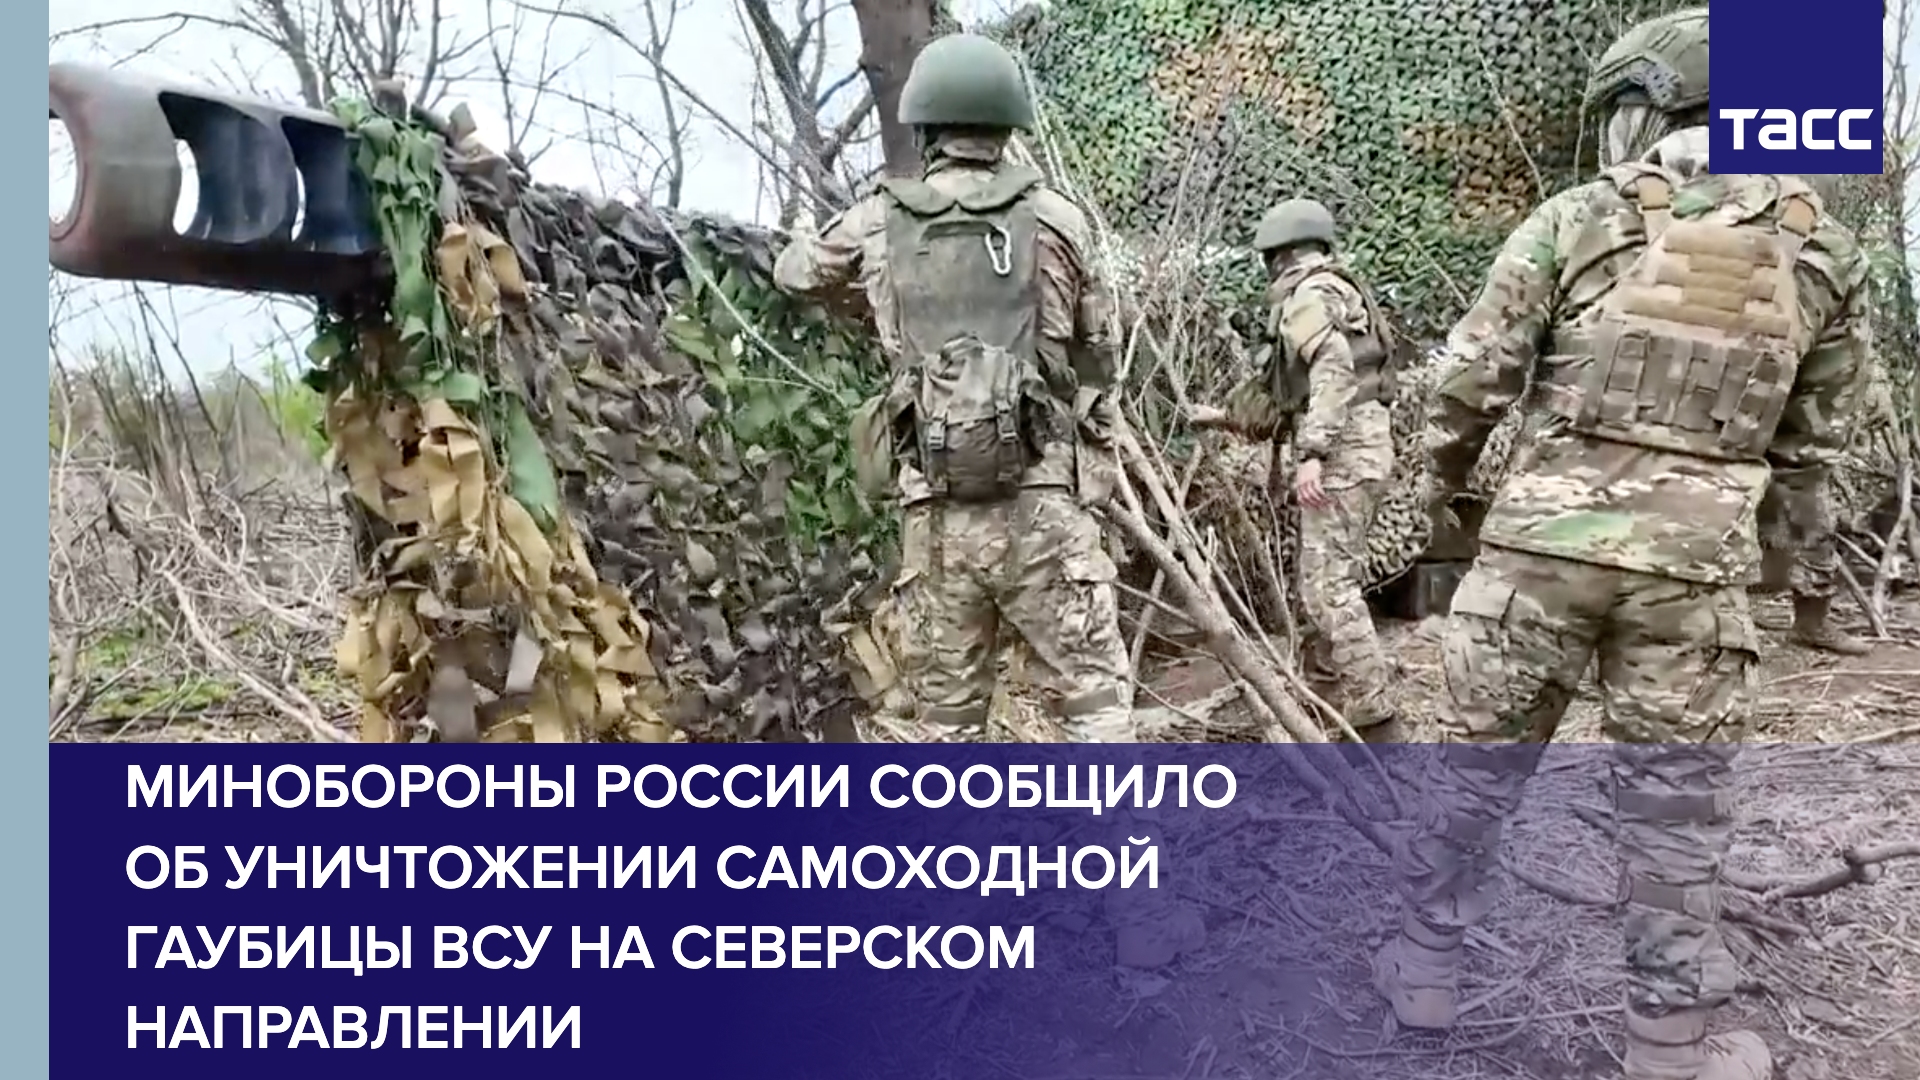 Минобороны России сообщило об уничтожении самоходной гаубицы ВСУ на северском направлении